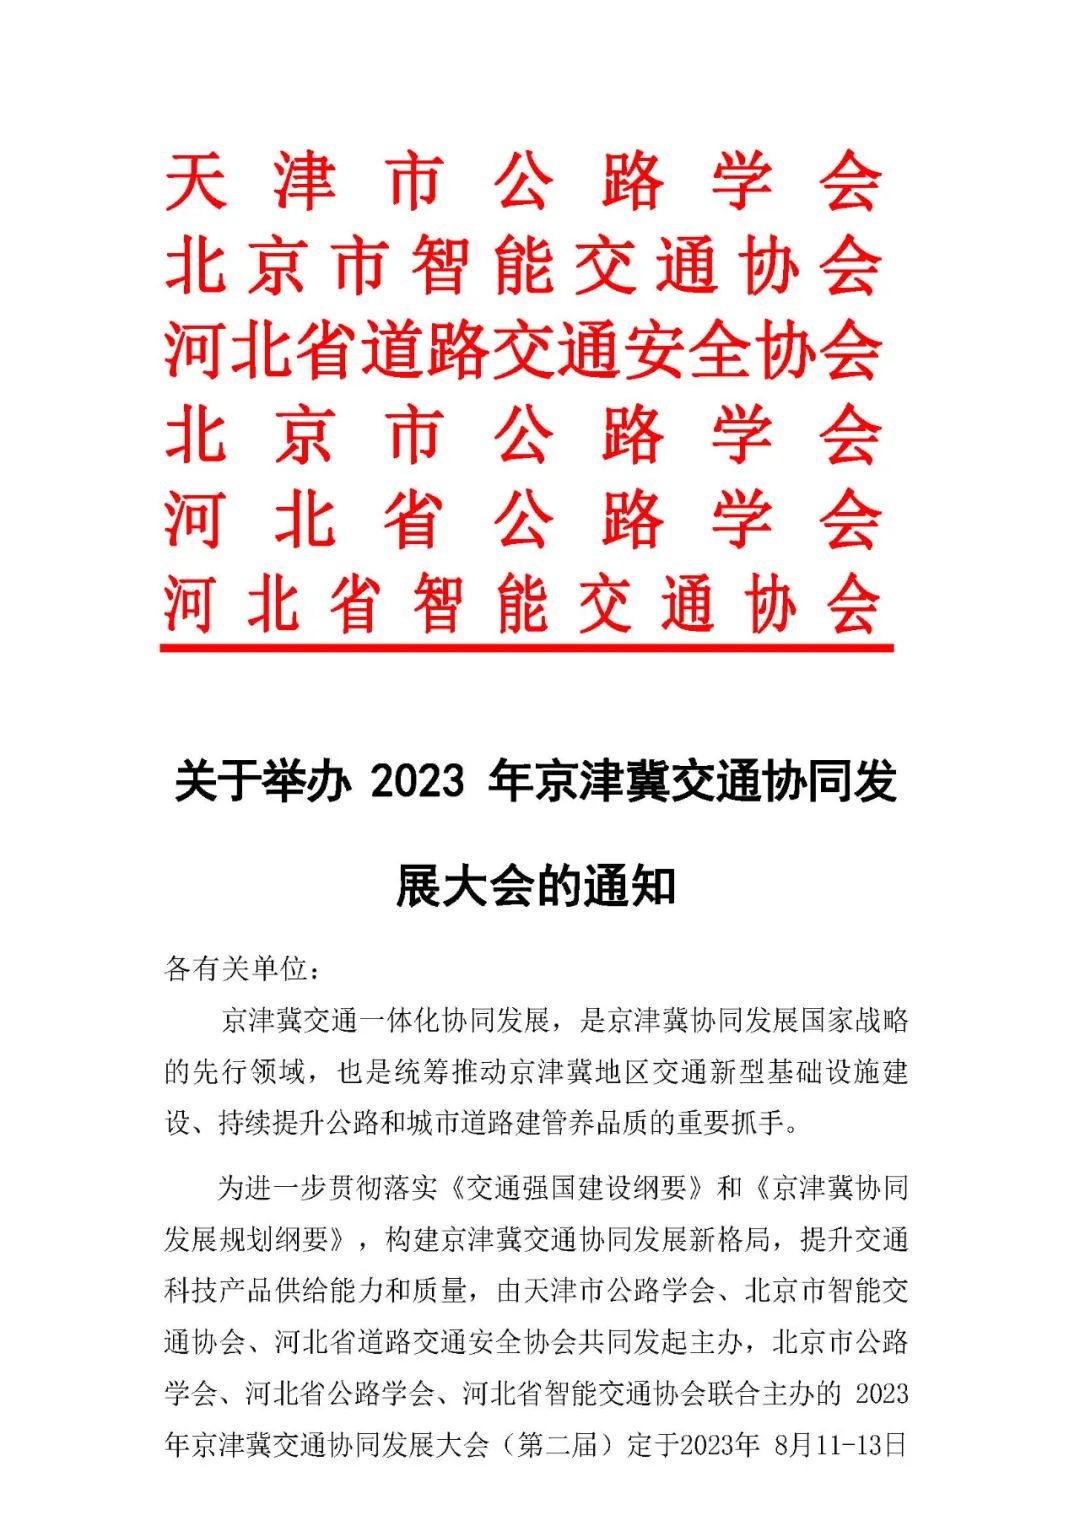 全新项目管理模式 赋能交通发展｜计支宝受邀参加2023年京津冀交通协同发展大会